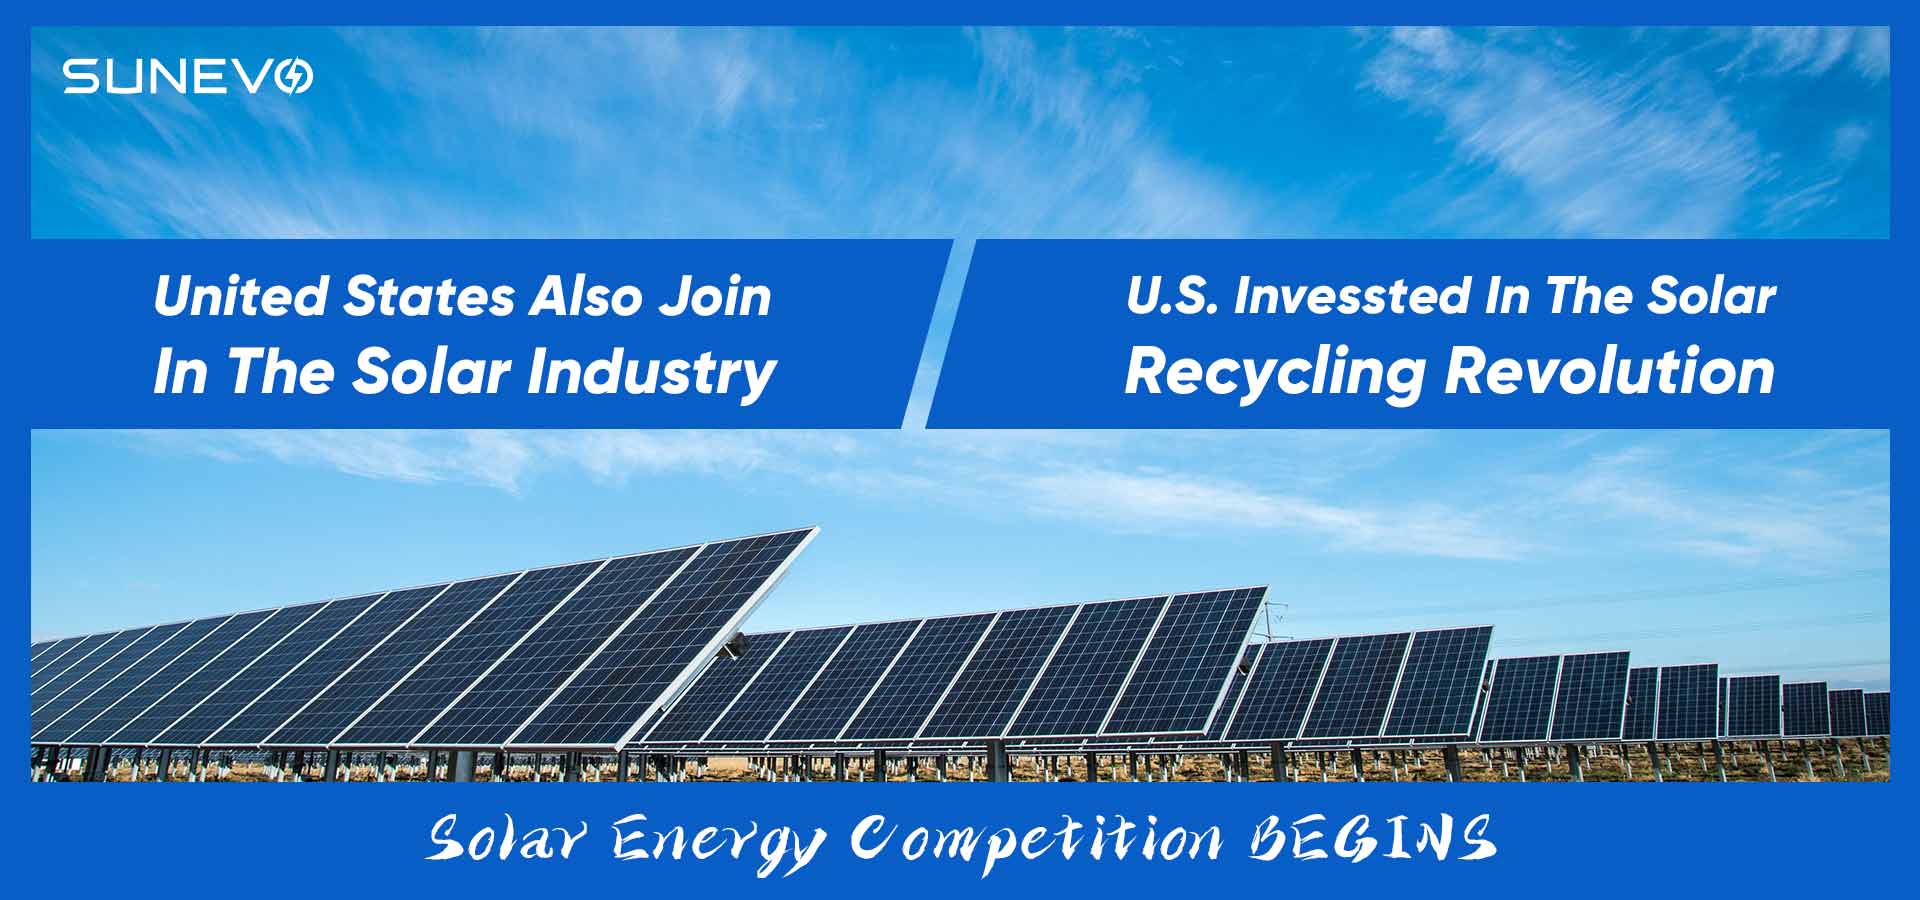 Inversión estadounidense en la revolución del reciclaje solar